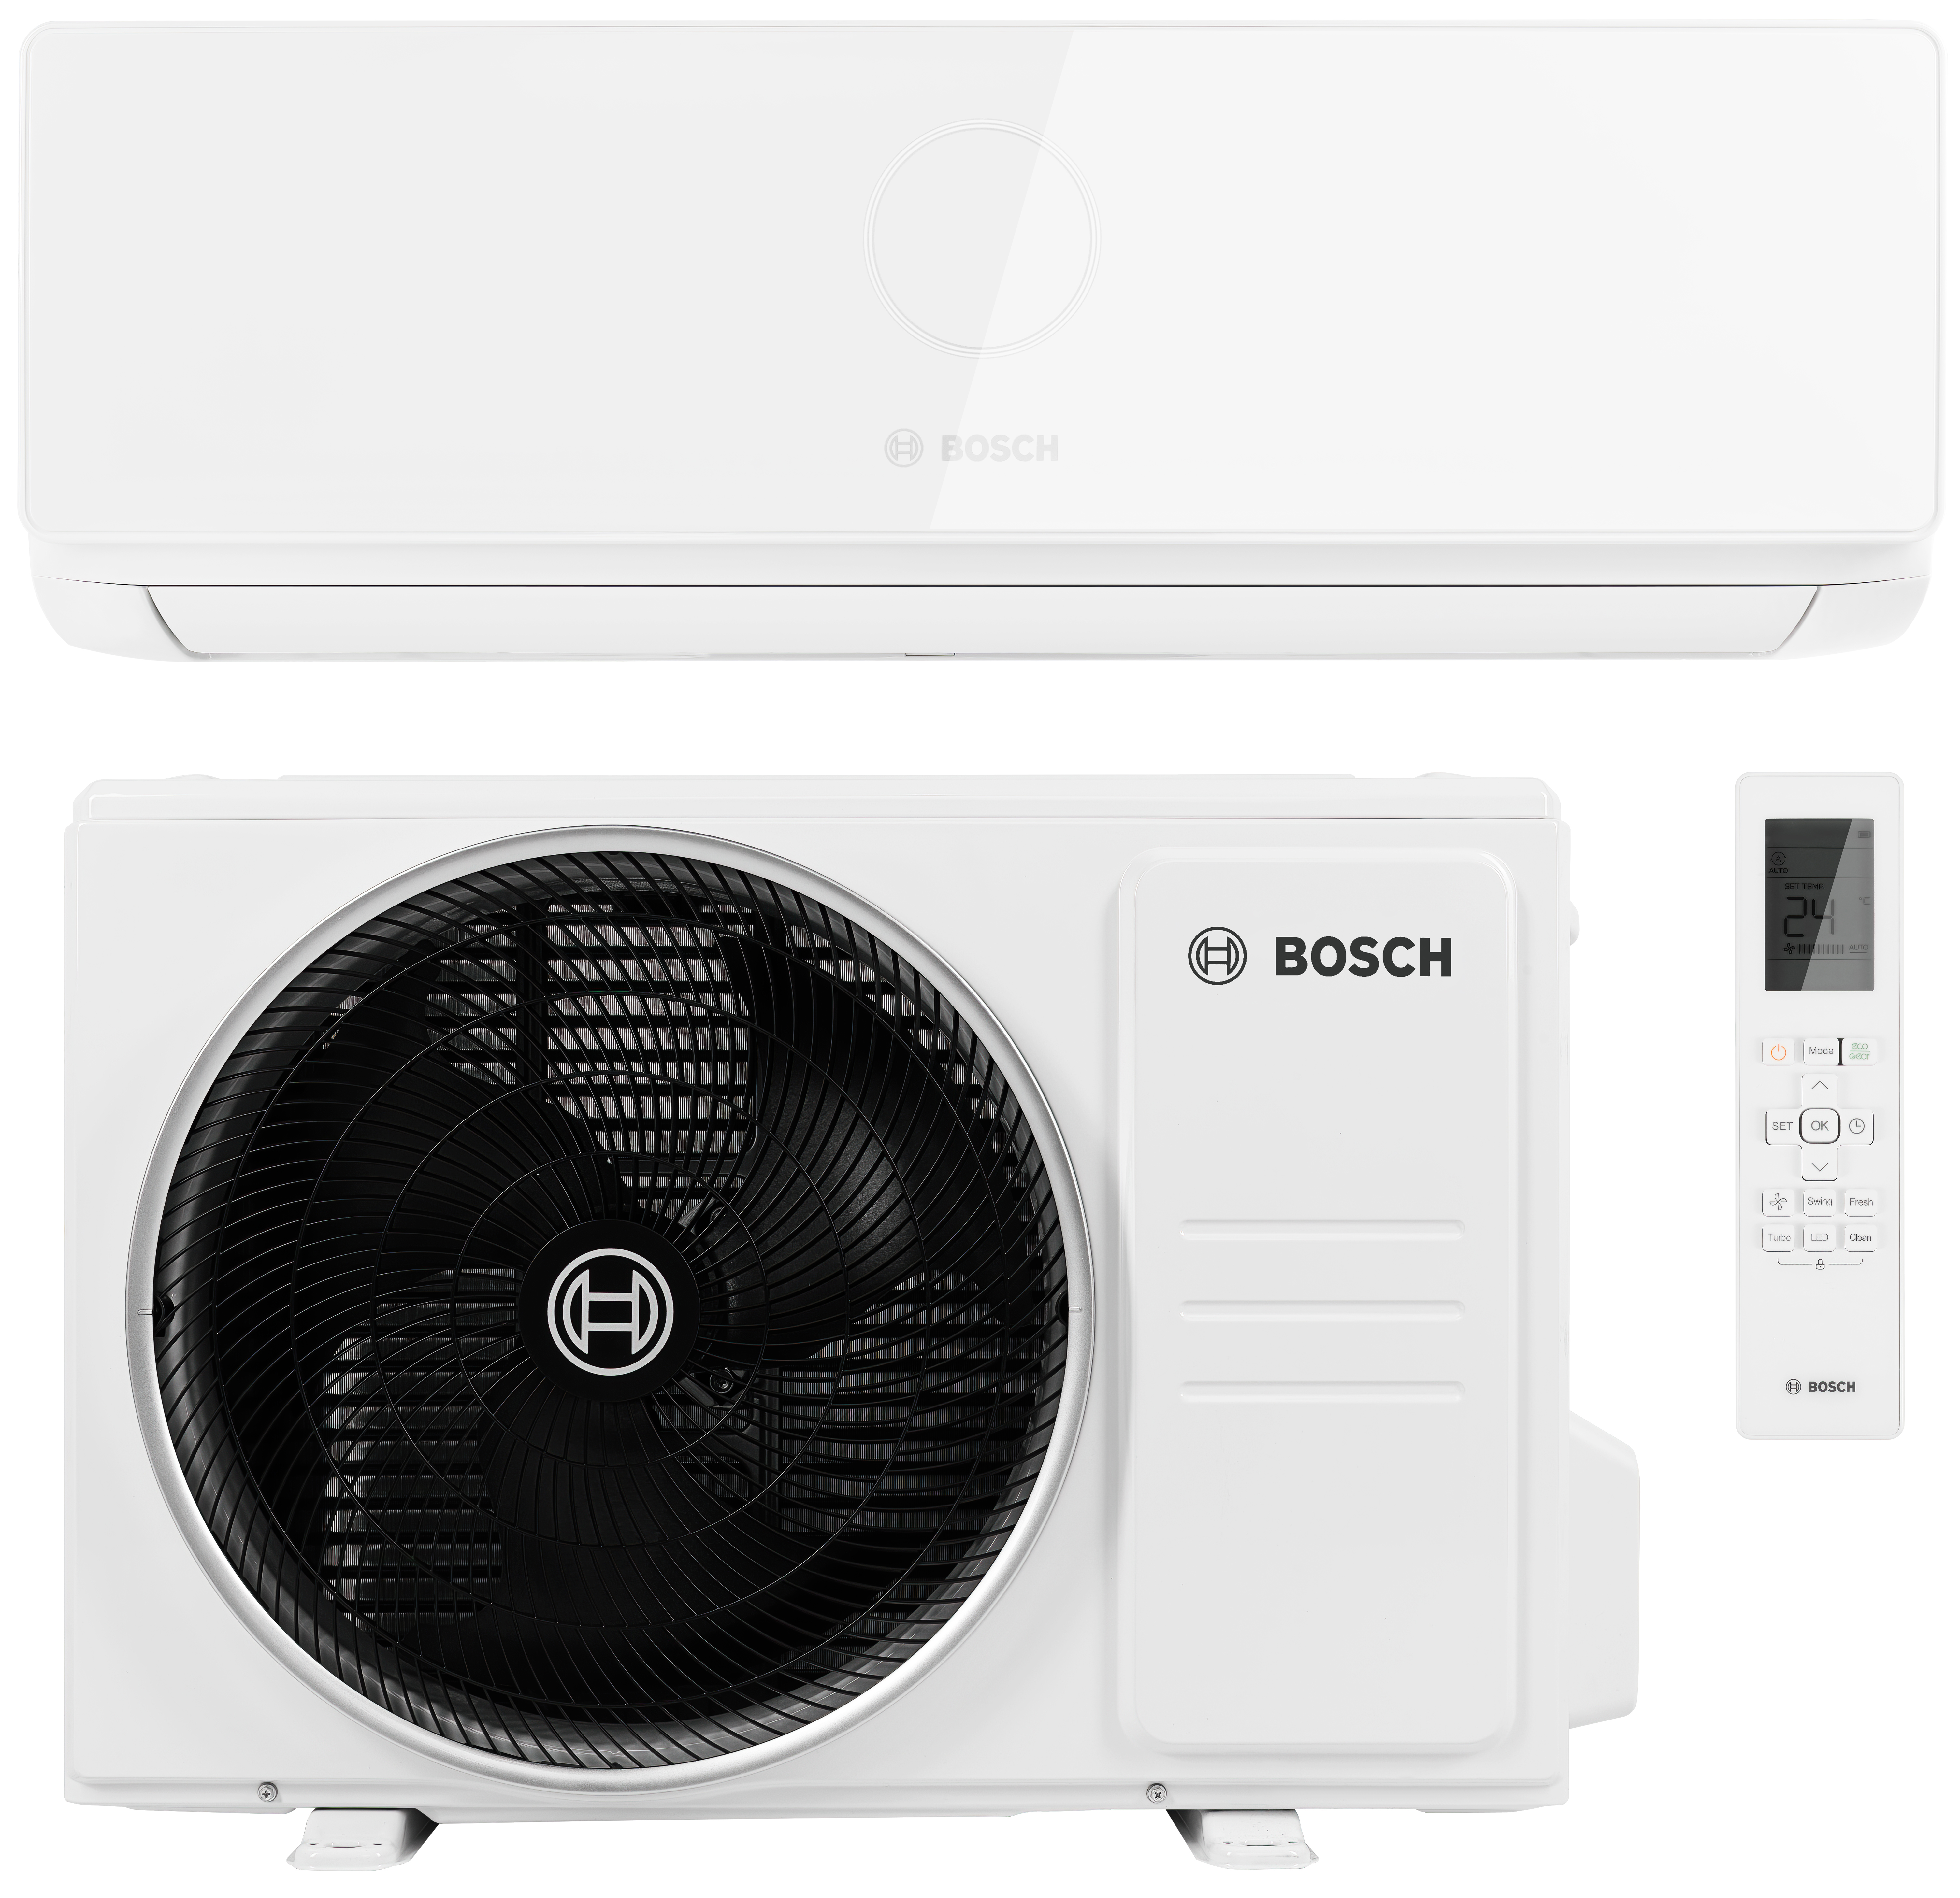 Кондиционер сплит-система Bosch Climate CL5000i 35 E в интернет-магазине, главное фото